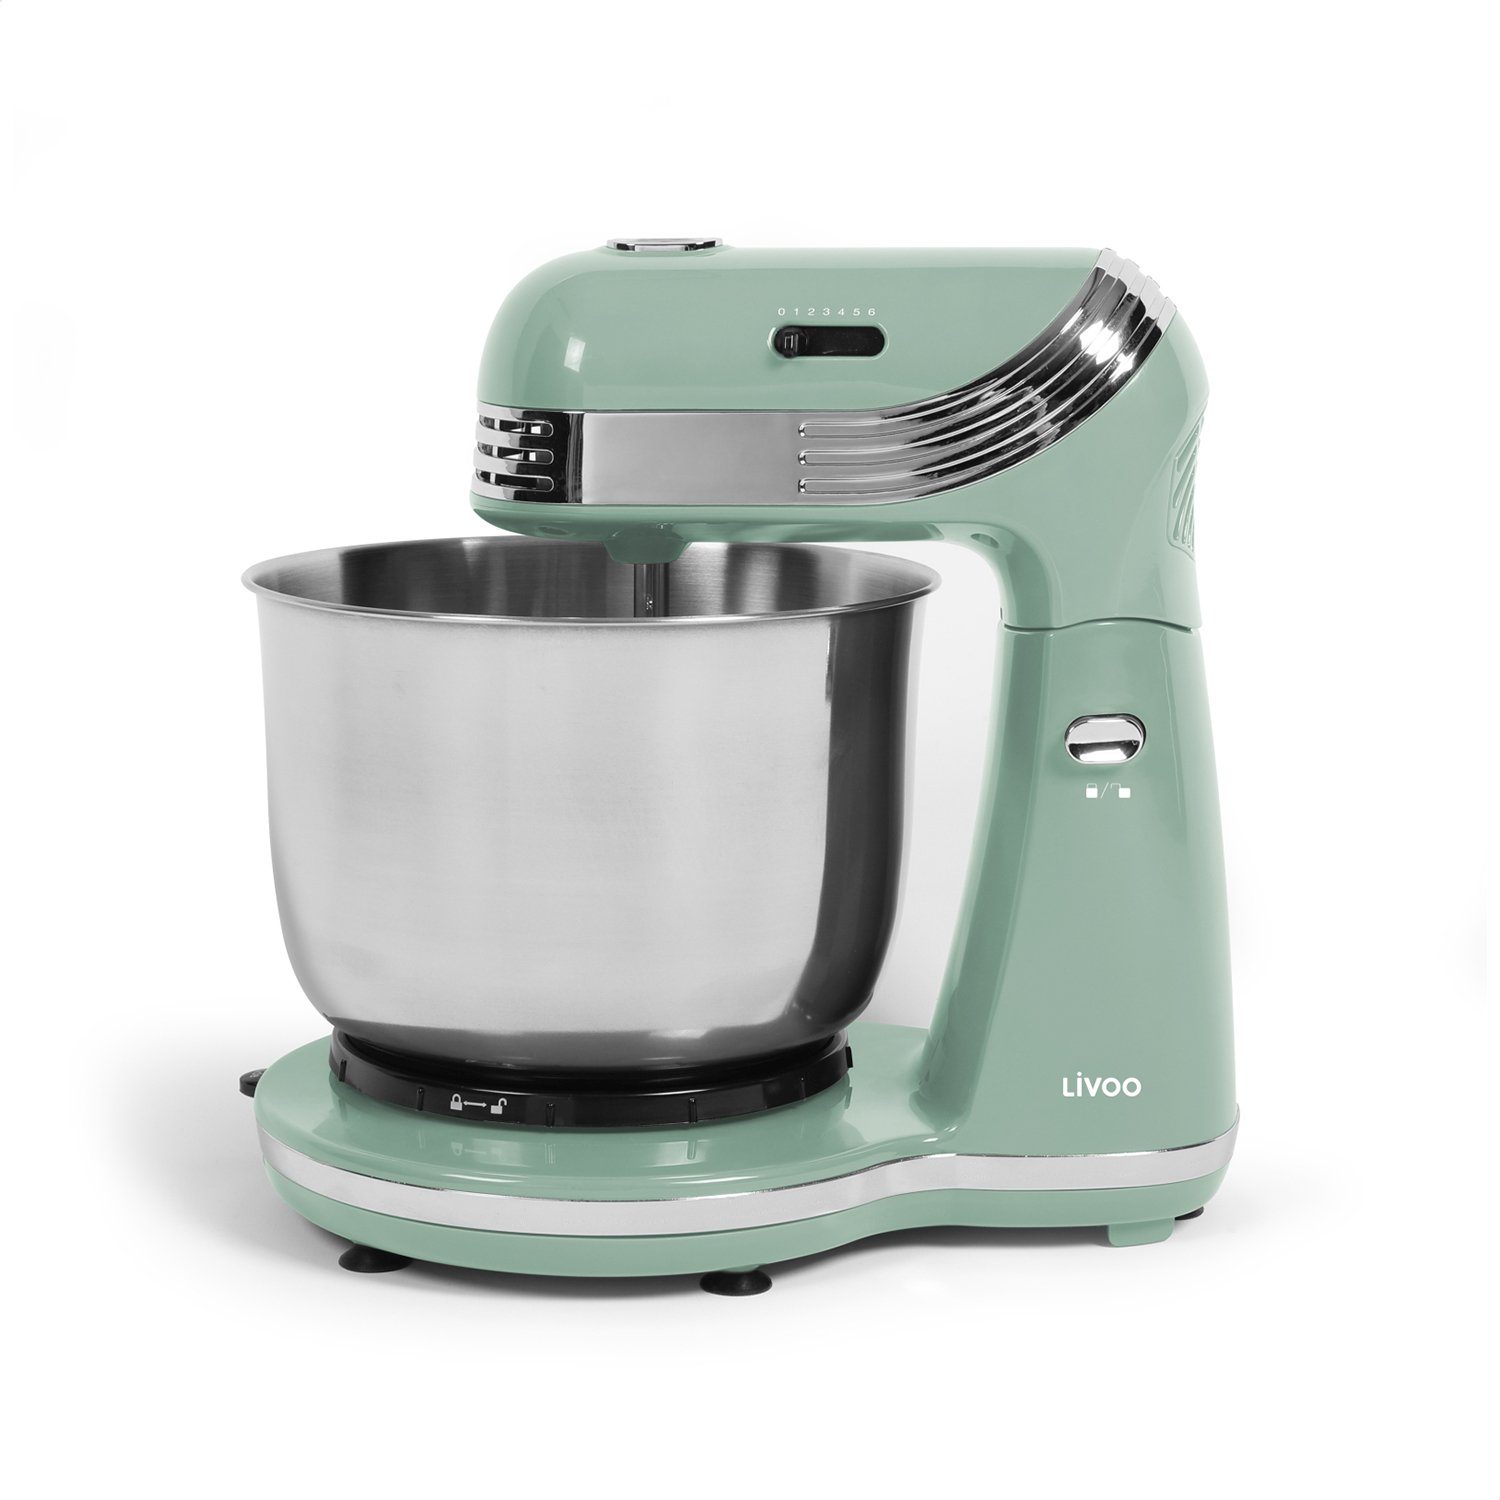 LIVOO Küchenmaschine LIVOO Knetmaschine Rührmaschine Küchenmaschine  Edelstahlbehälter DOP137VS grün, 250 W online kaufen | OTTO